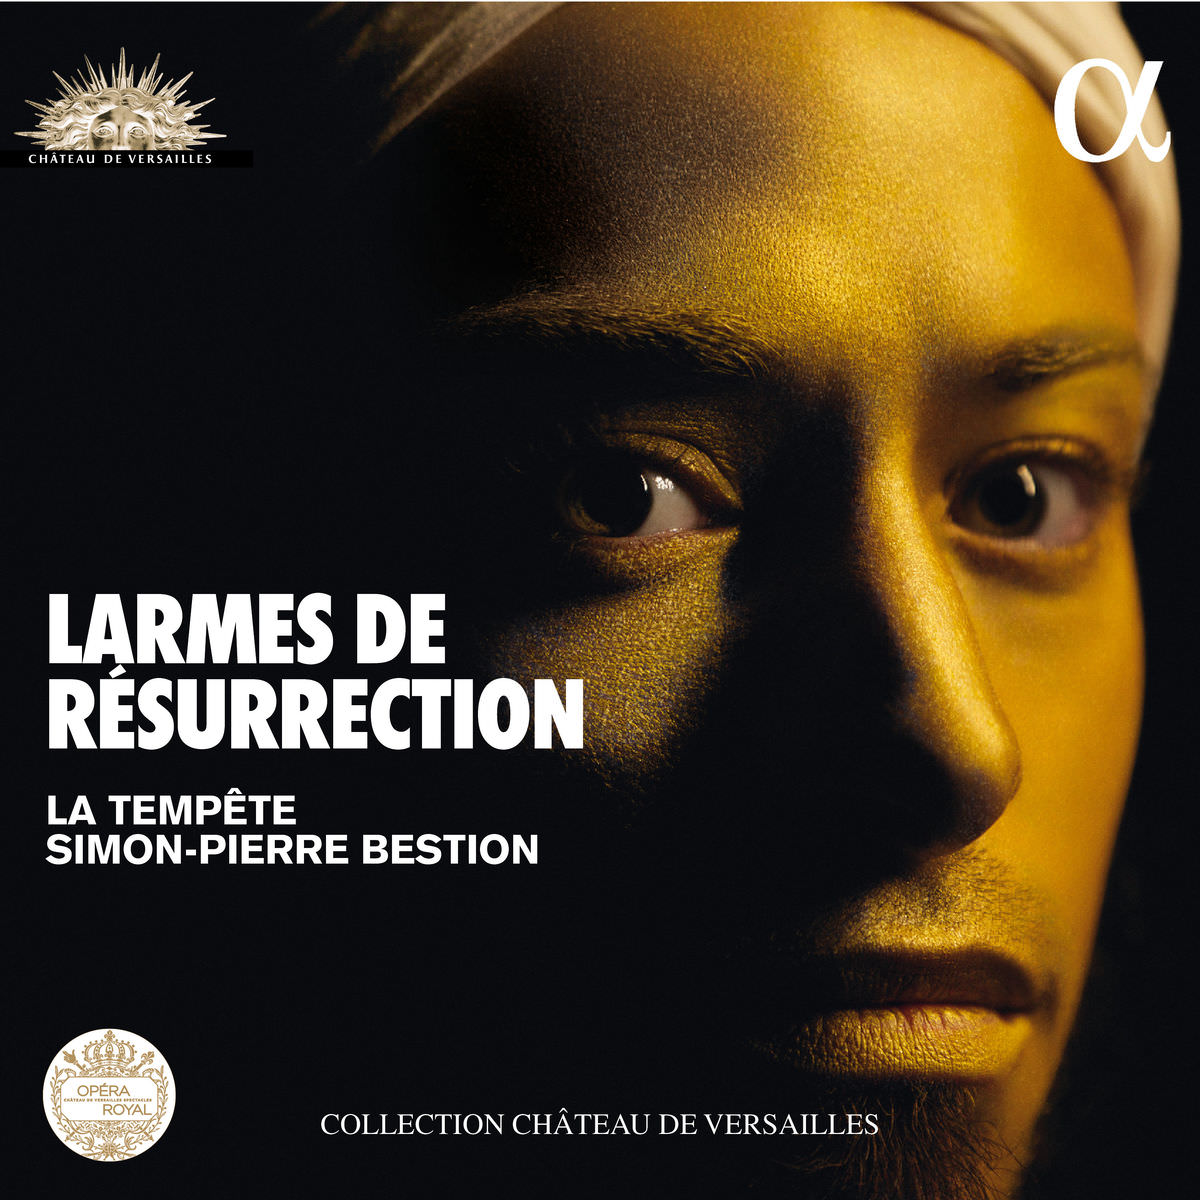 La Tempete & Simon-Pierre Bestion - Larmes de Resurrection (Collection chateau de Versailles) (2018) [FLAC 24bit/96kHz]